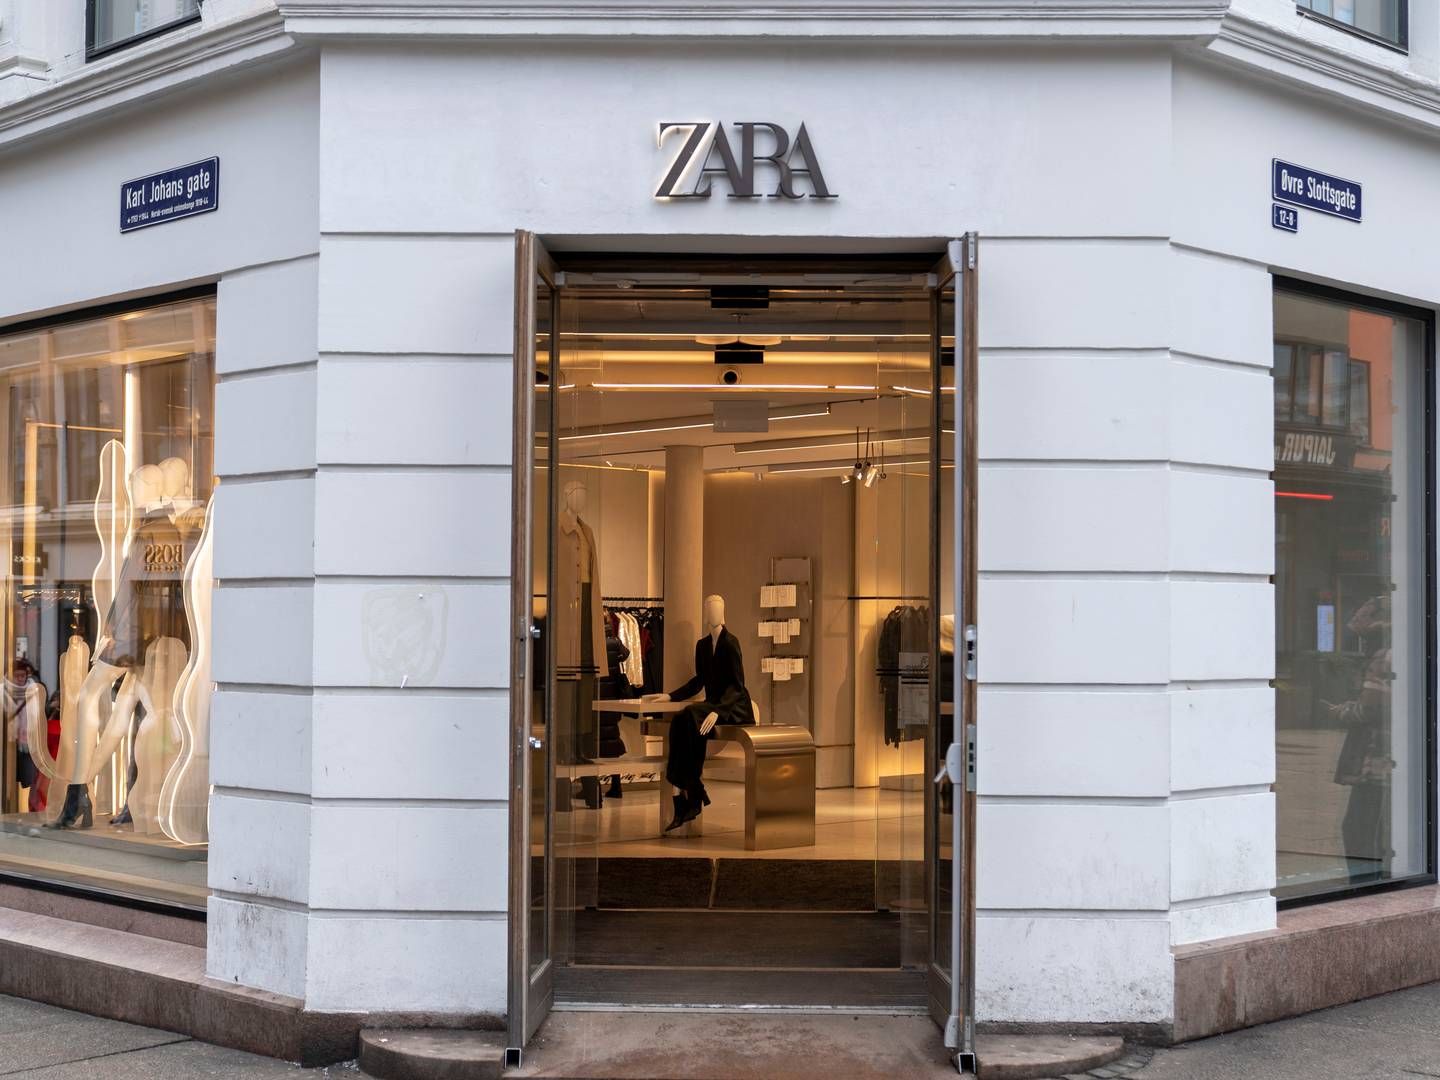 MILLIARDER: En Zara-butikk i Oslo sentrum. Milliardene renner inn for Inditex, selskapet bak Zara. | Photo: Ludvig Heiberg Larsen/NTB